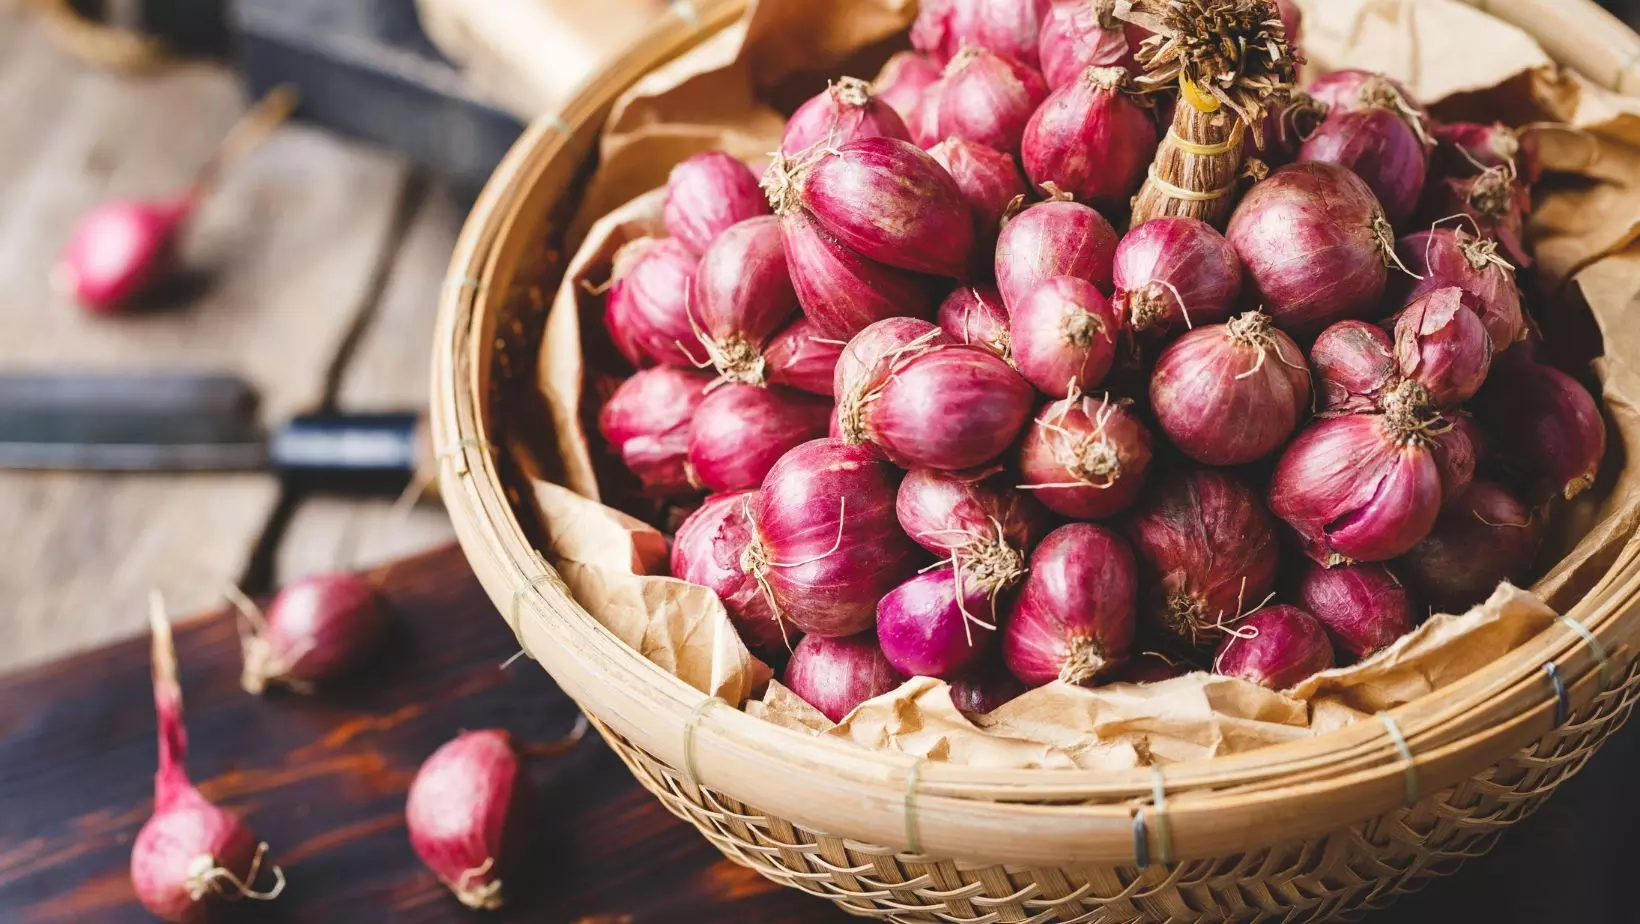 Onion prices skyrocket in UAE